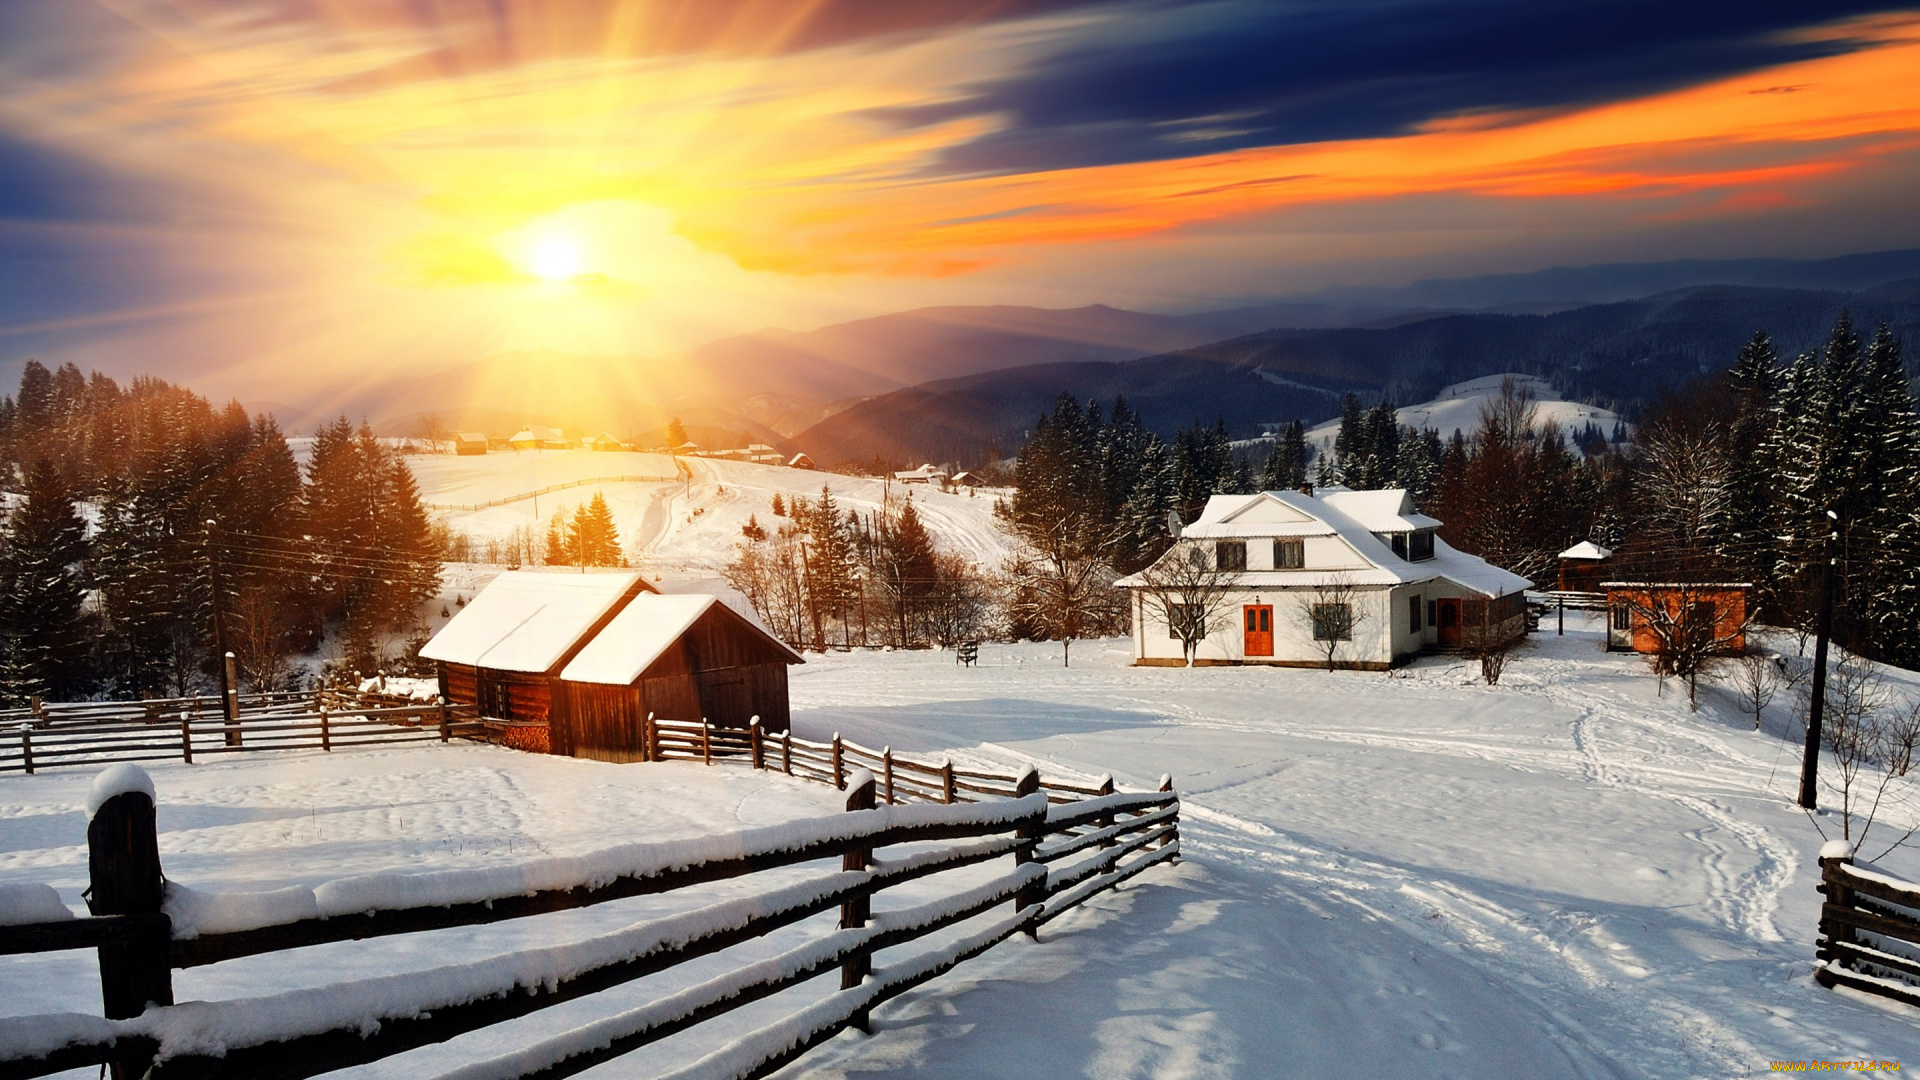 города, -, пейзажи, снег, зима, snow, landscape, забор, деревня, winter, домики, солнце